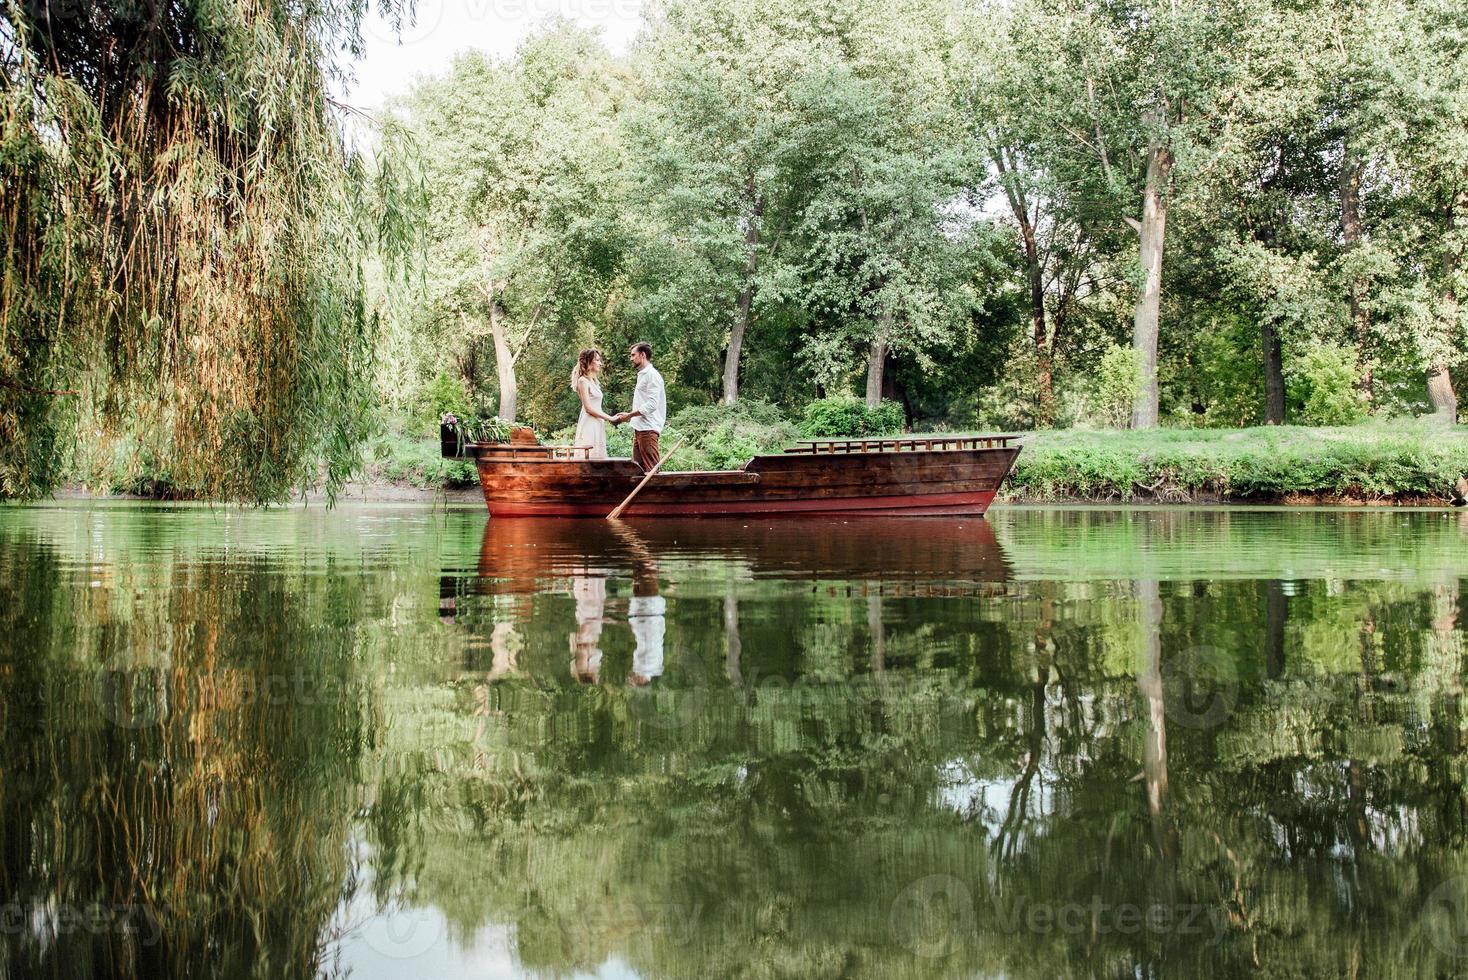 een boottocht voor een jongen en een meisje langs de kanalen en baaien van de rivier foto